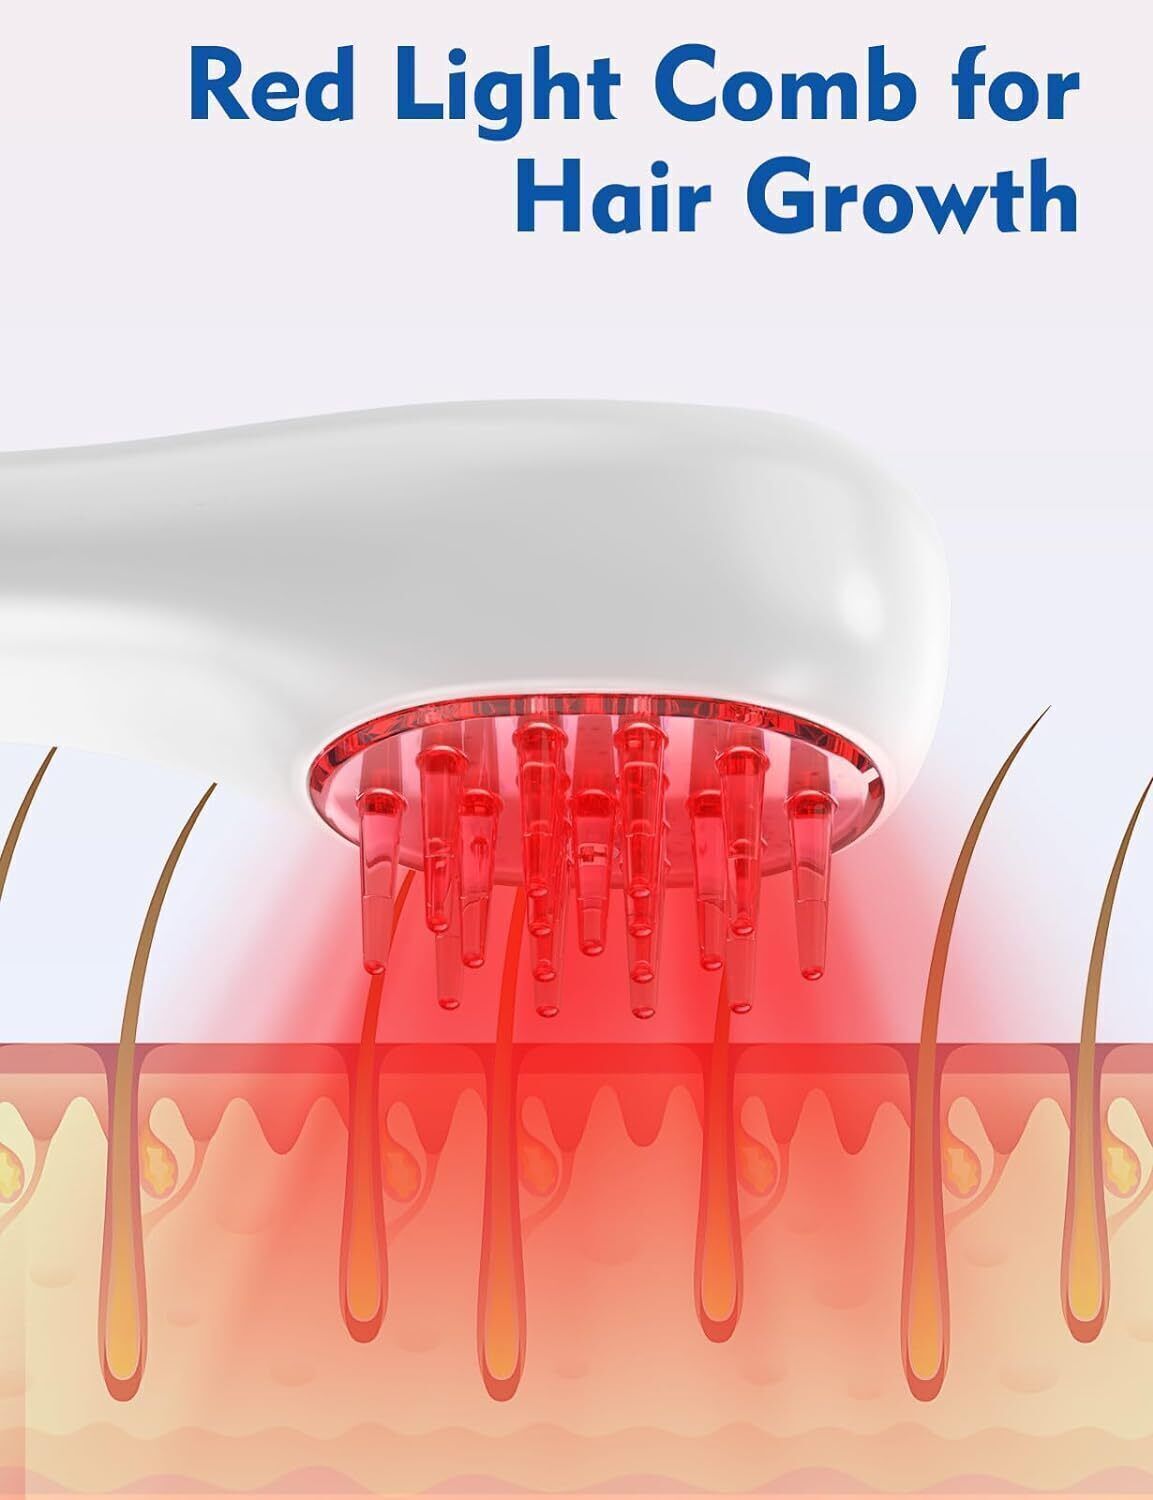 Premium Laser Rotlicht Laserbürste-Laserkamm-gegen Haarausfall Haarwuchsmittel d